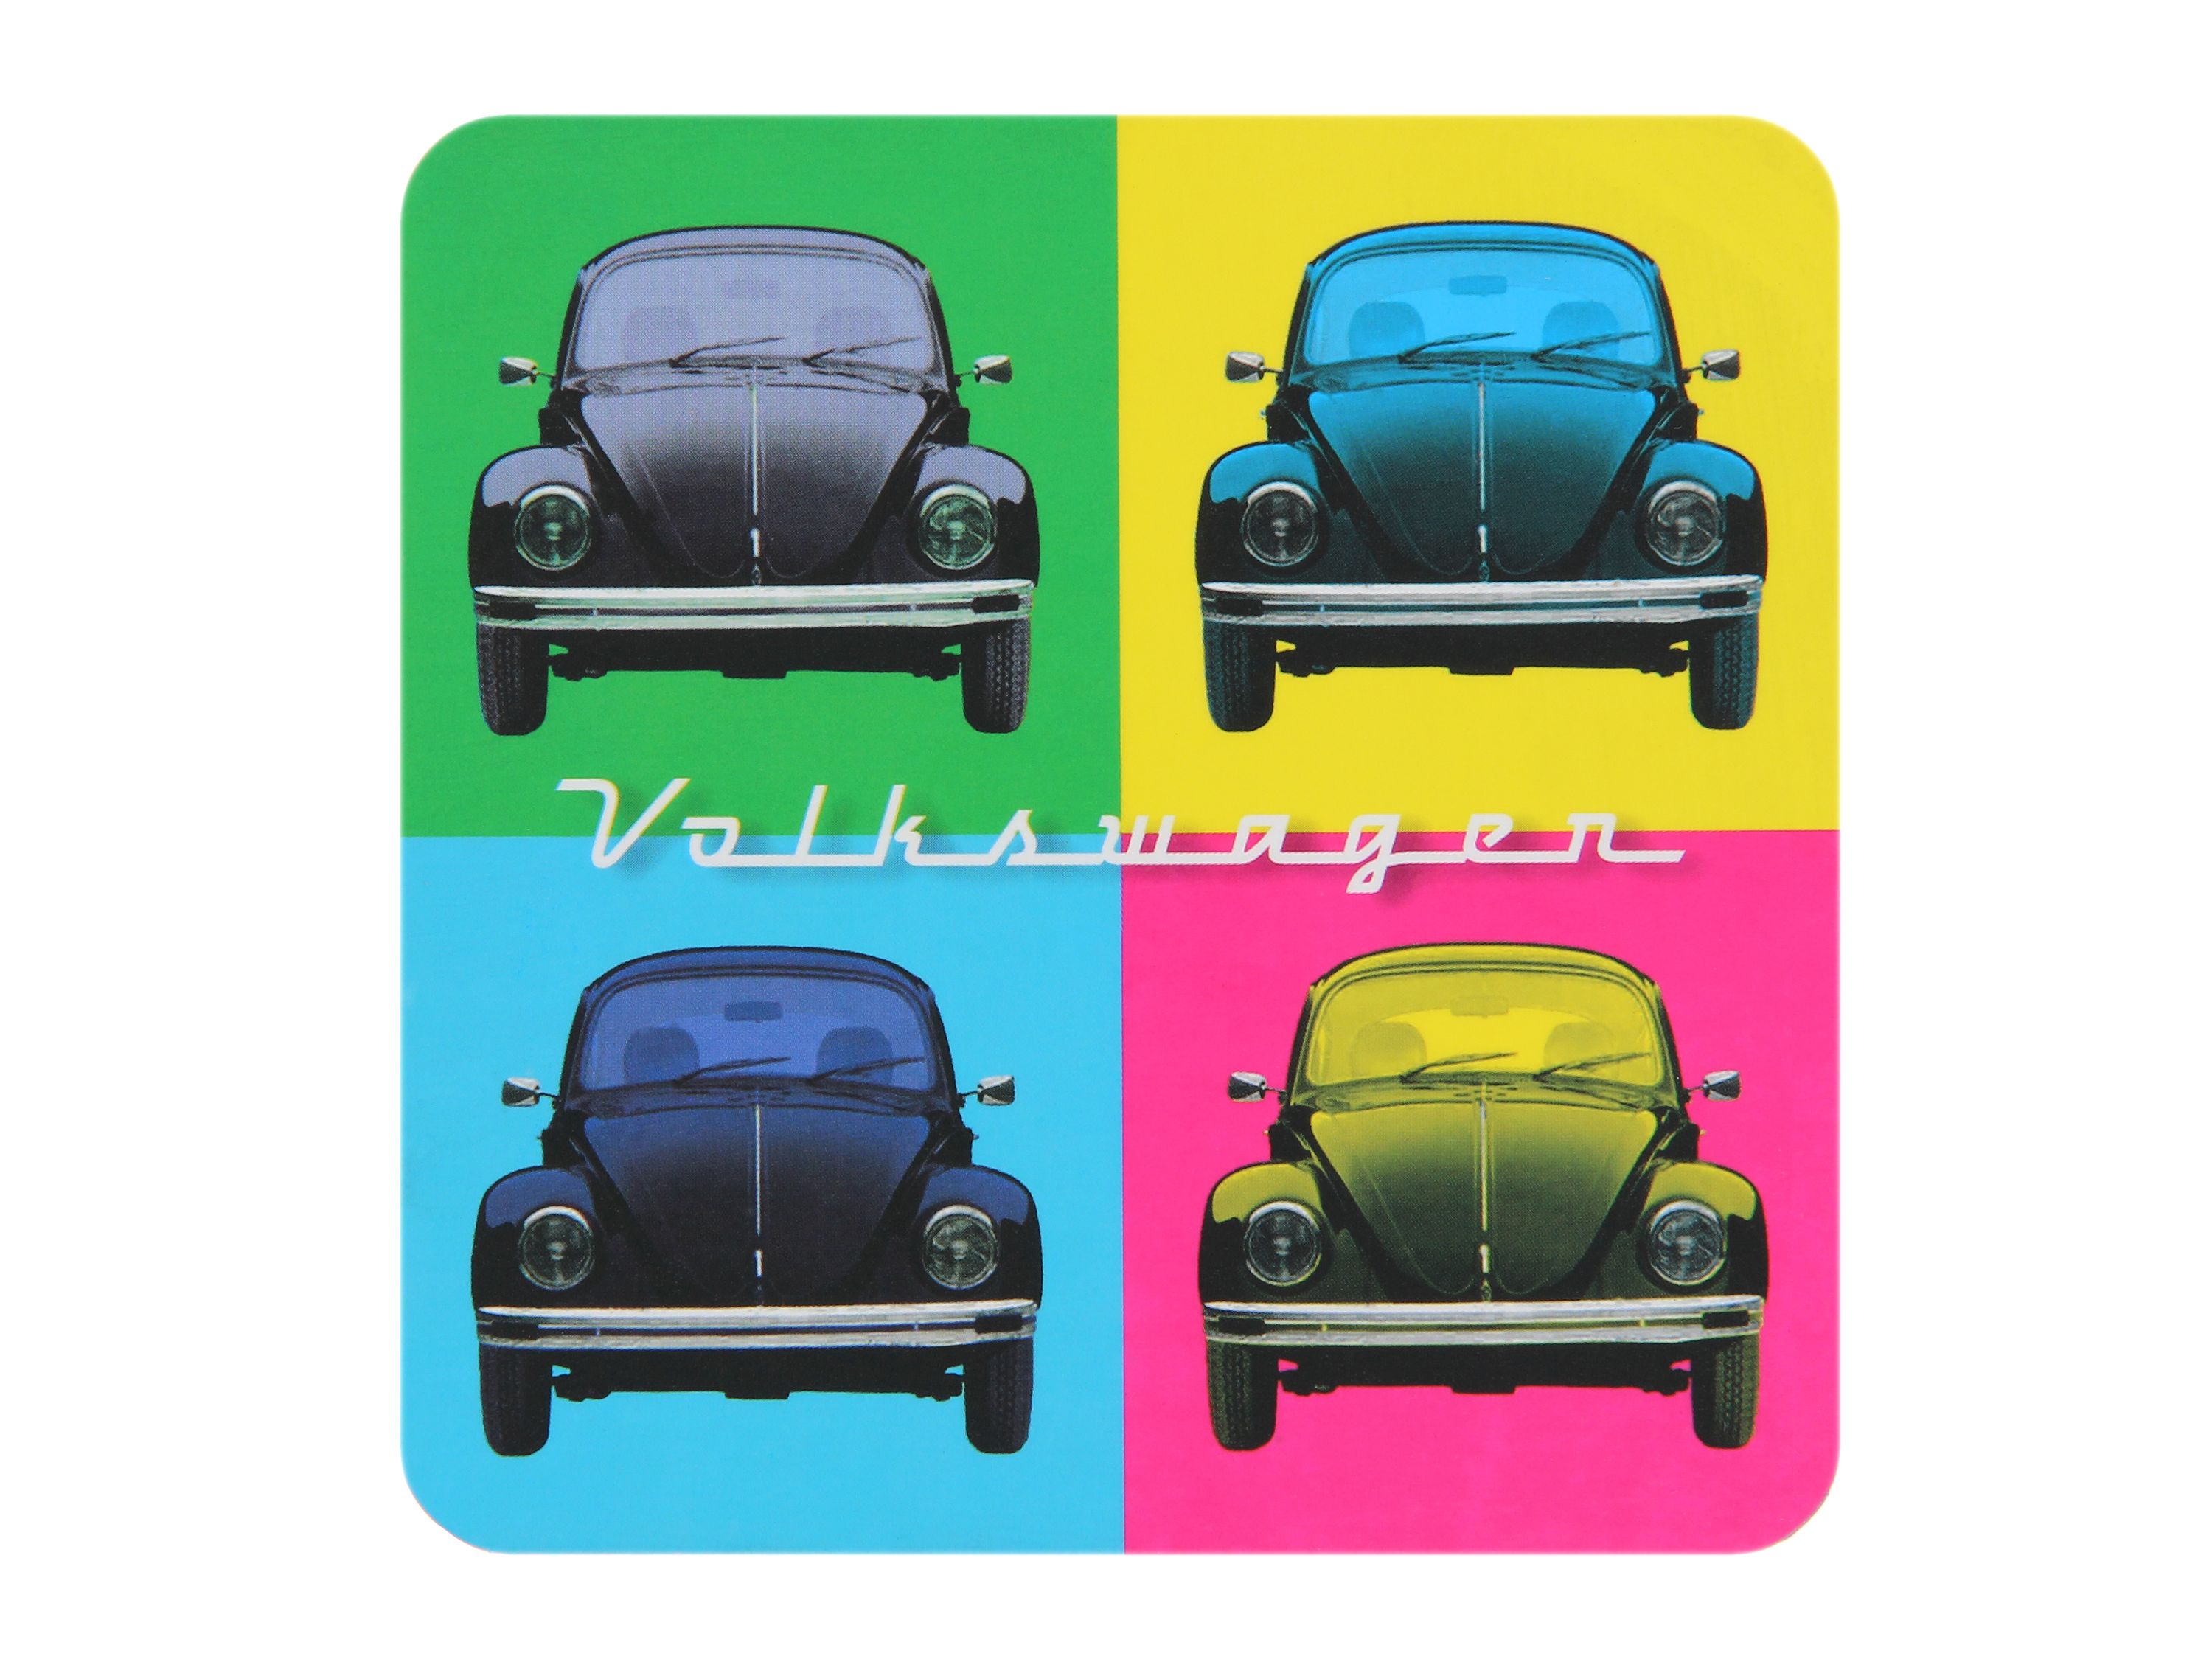 Juego de 4 posavasos VW Beetle en estuche de cartón - Multicolor